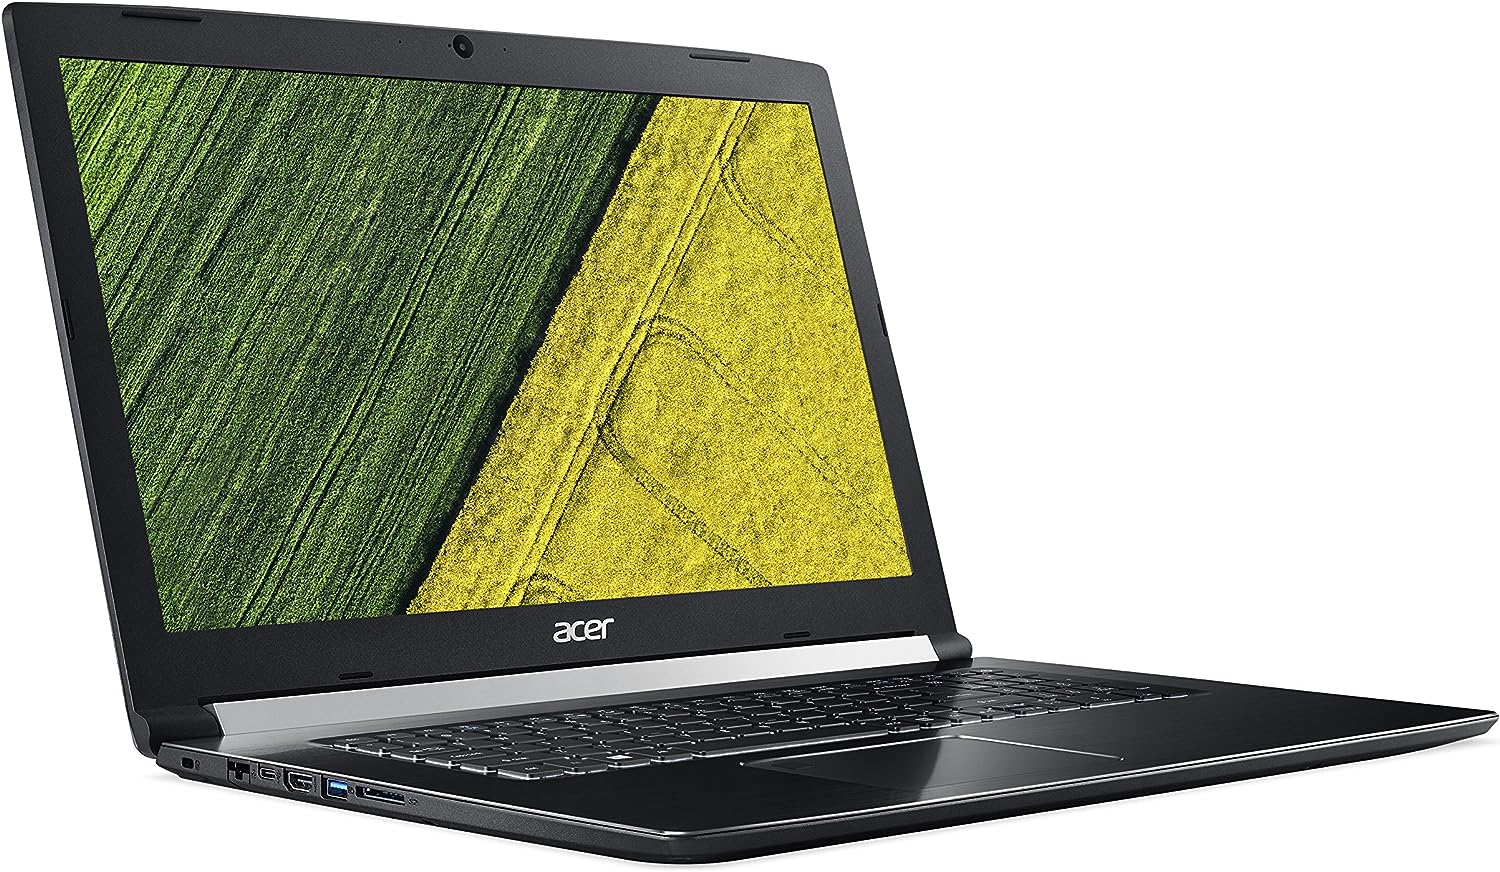 مشخصات کامل لپ تاپ Acer مدل Acer Aspire 7 A717-72G-700J